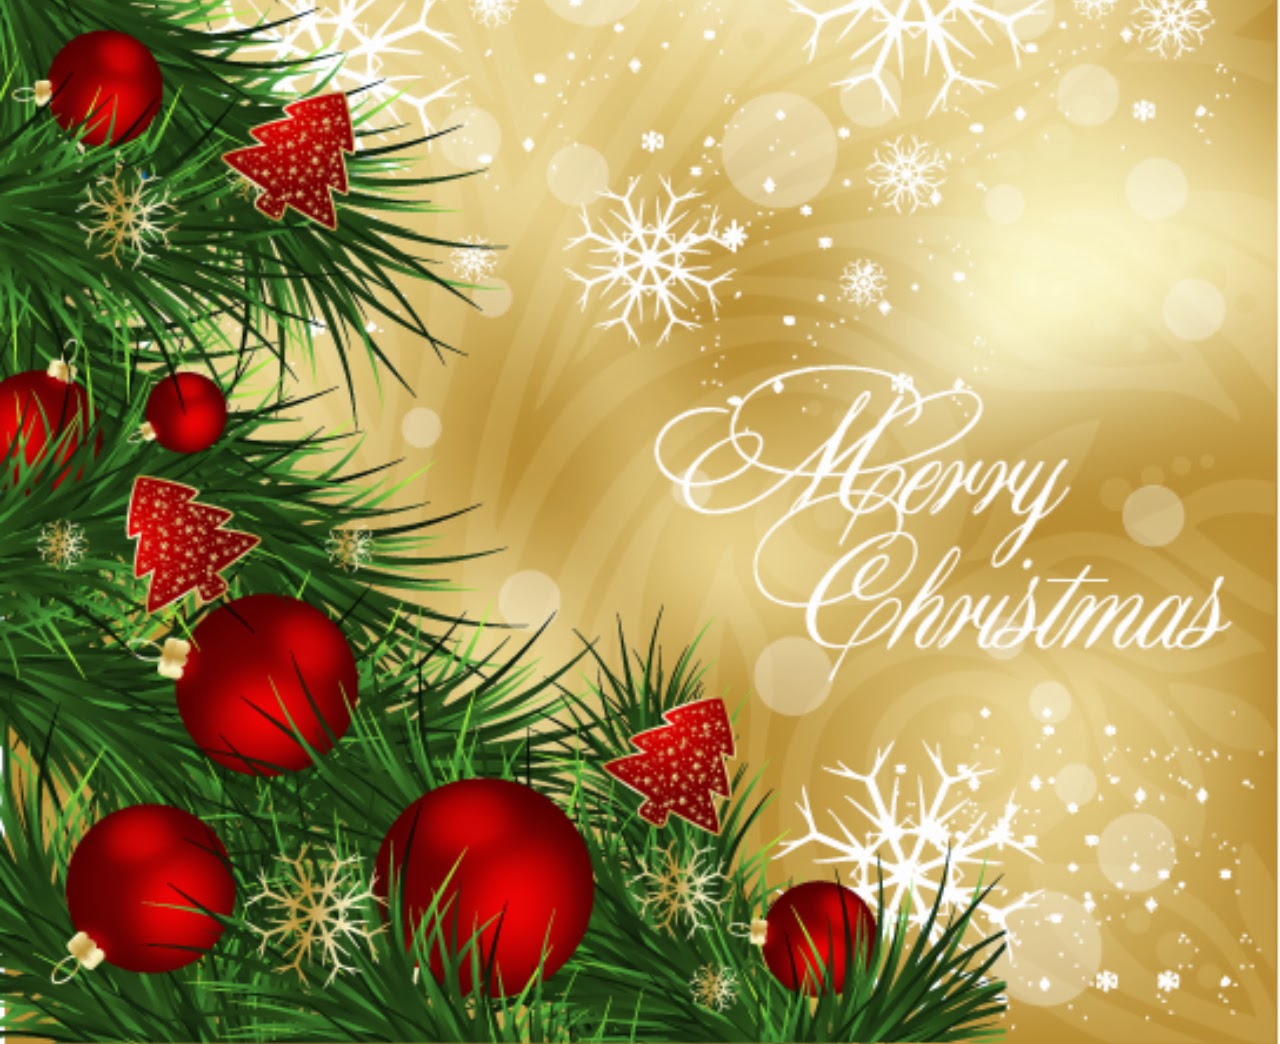 Merry Christmas SMS For You | New Christmas Shayari With 140 Words | New Shayari SMS Hindi